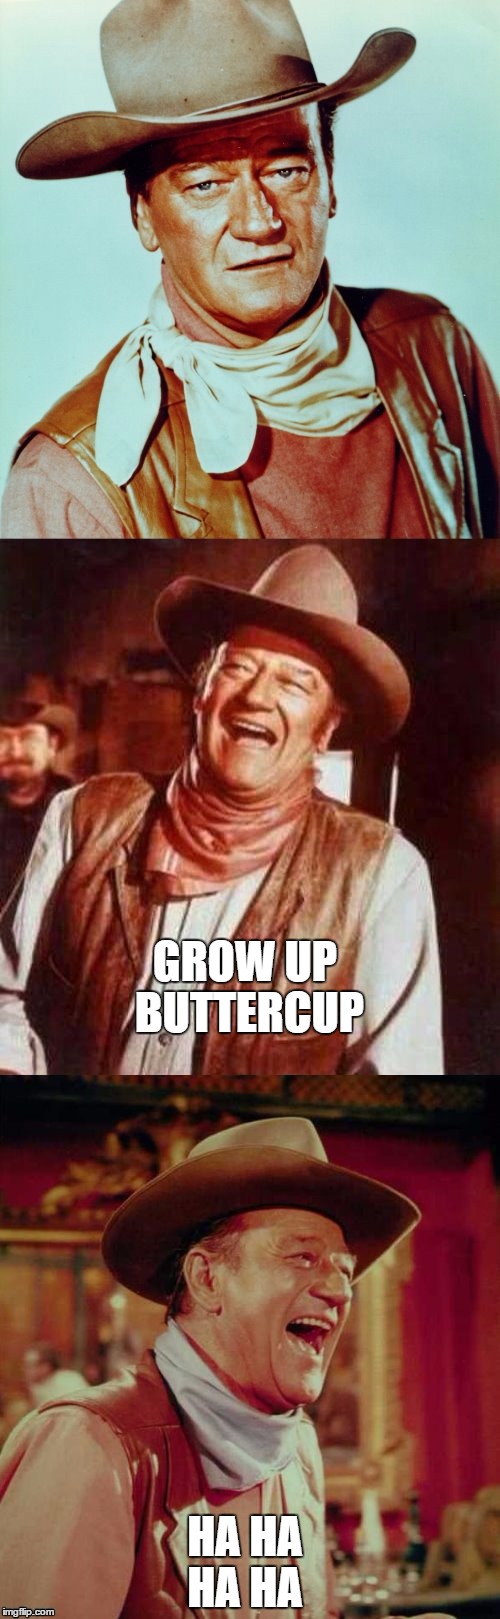 John Wayne Puns | GROW UP BUTTERCUP; HA HA HA HA | image tagged in john wayne puns | made w/ Imgflip meme maker